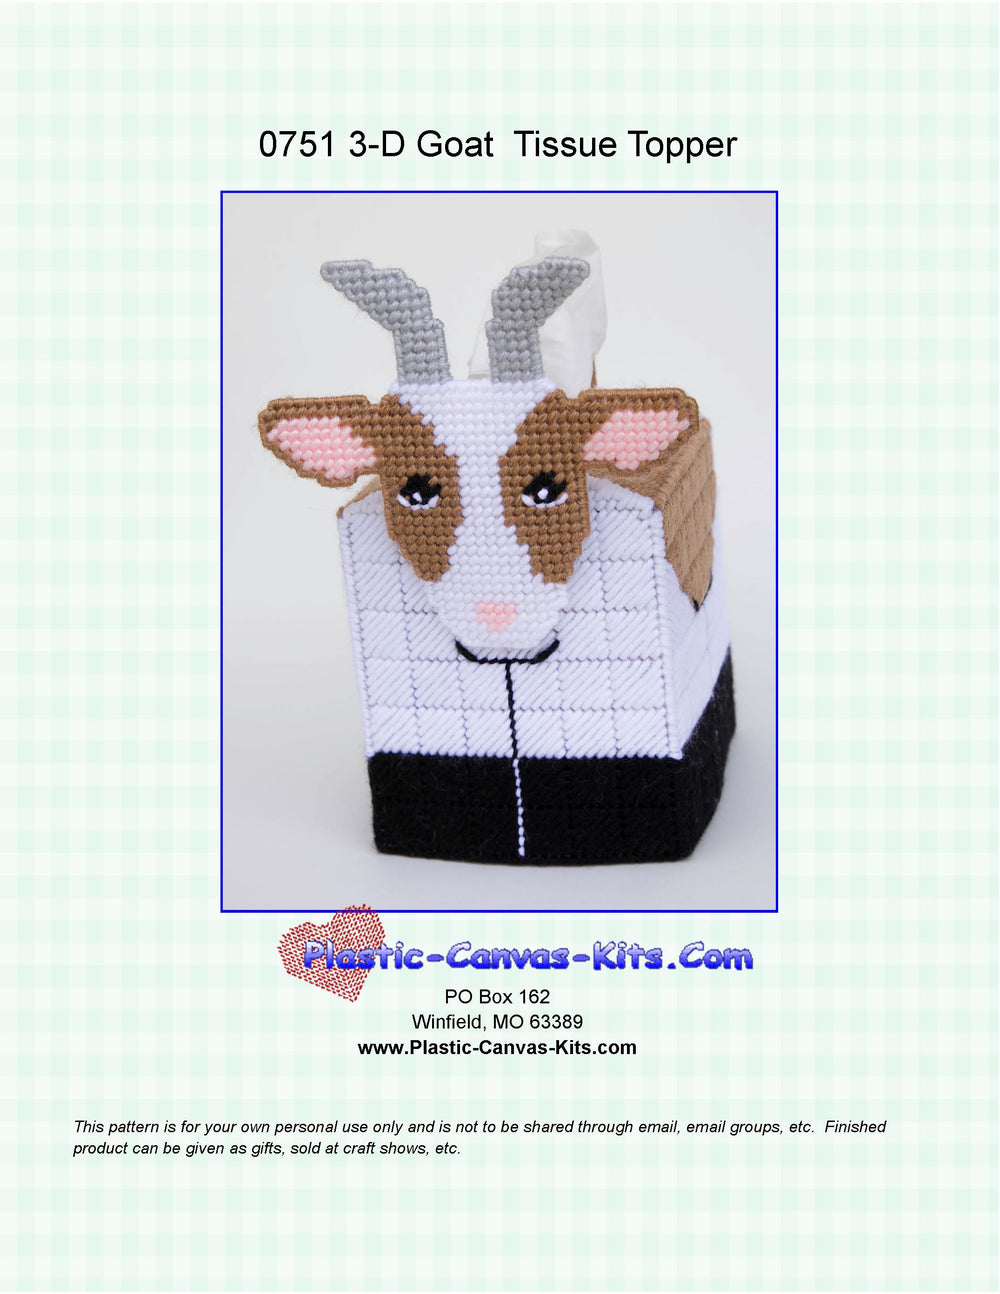 Goat 3-D Tissue Topper